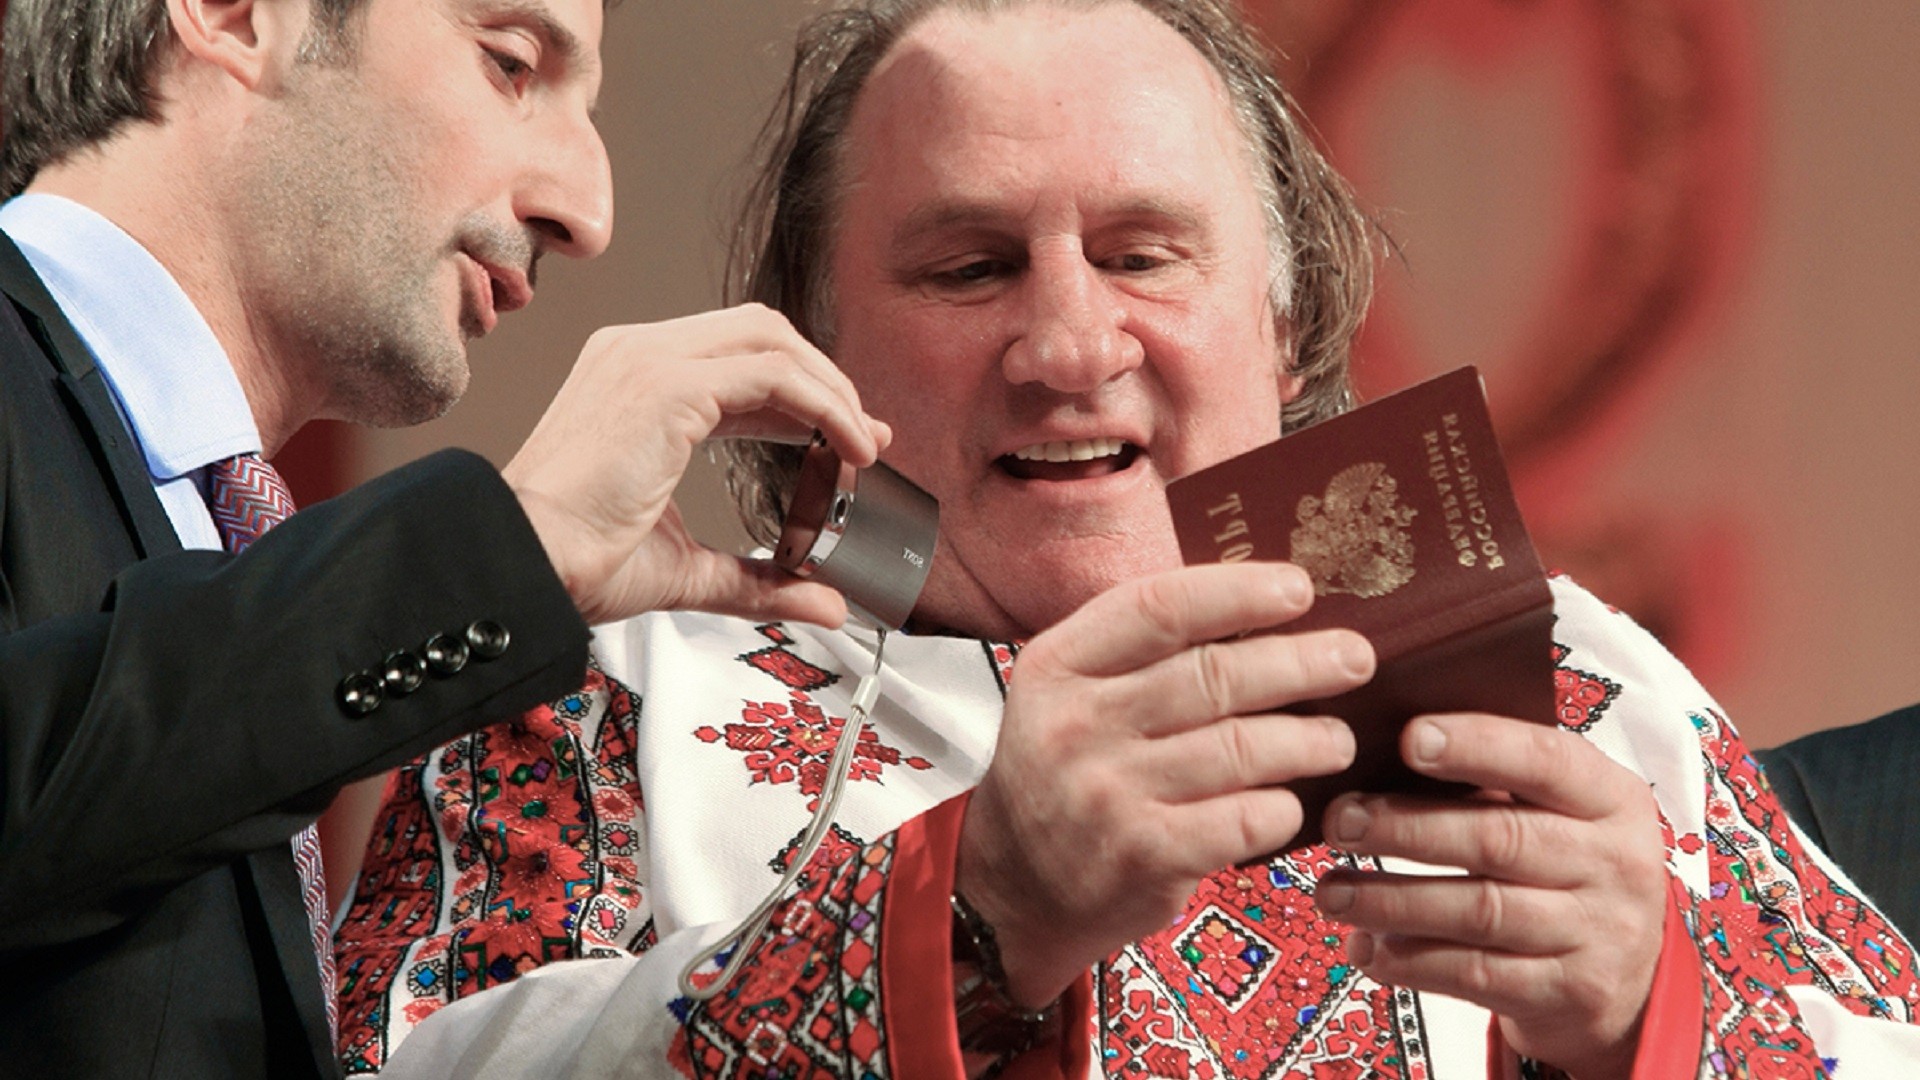 Gérard Depardieu, désormais détenteur de la citoyenneté russe, en tenue traditionnelle mordve, examine son passeport avec son traducteur, sur la scène du Théâtre d'opéra et de ballet de Saransk, capitale de la République de Mordovie où il possède un logement.